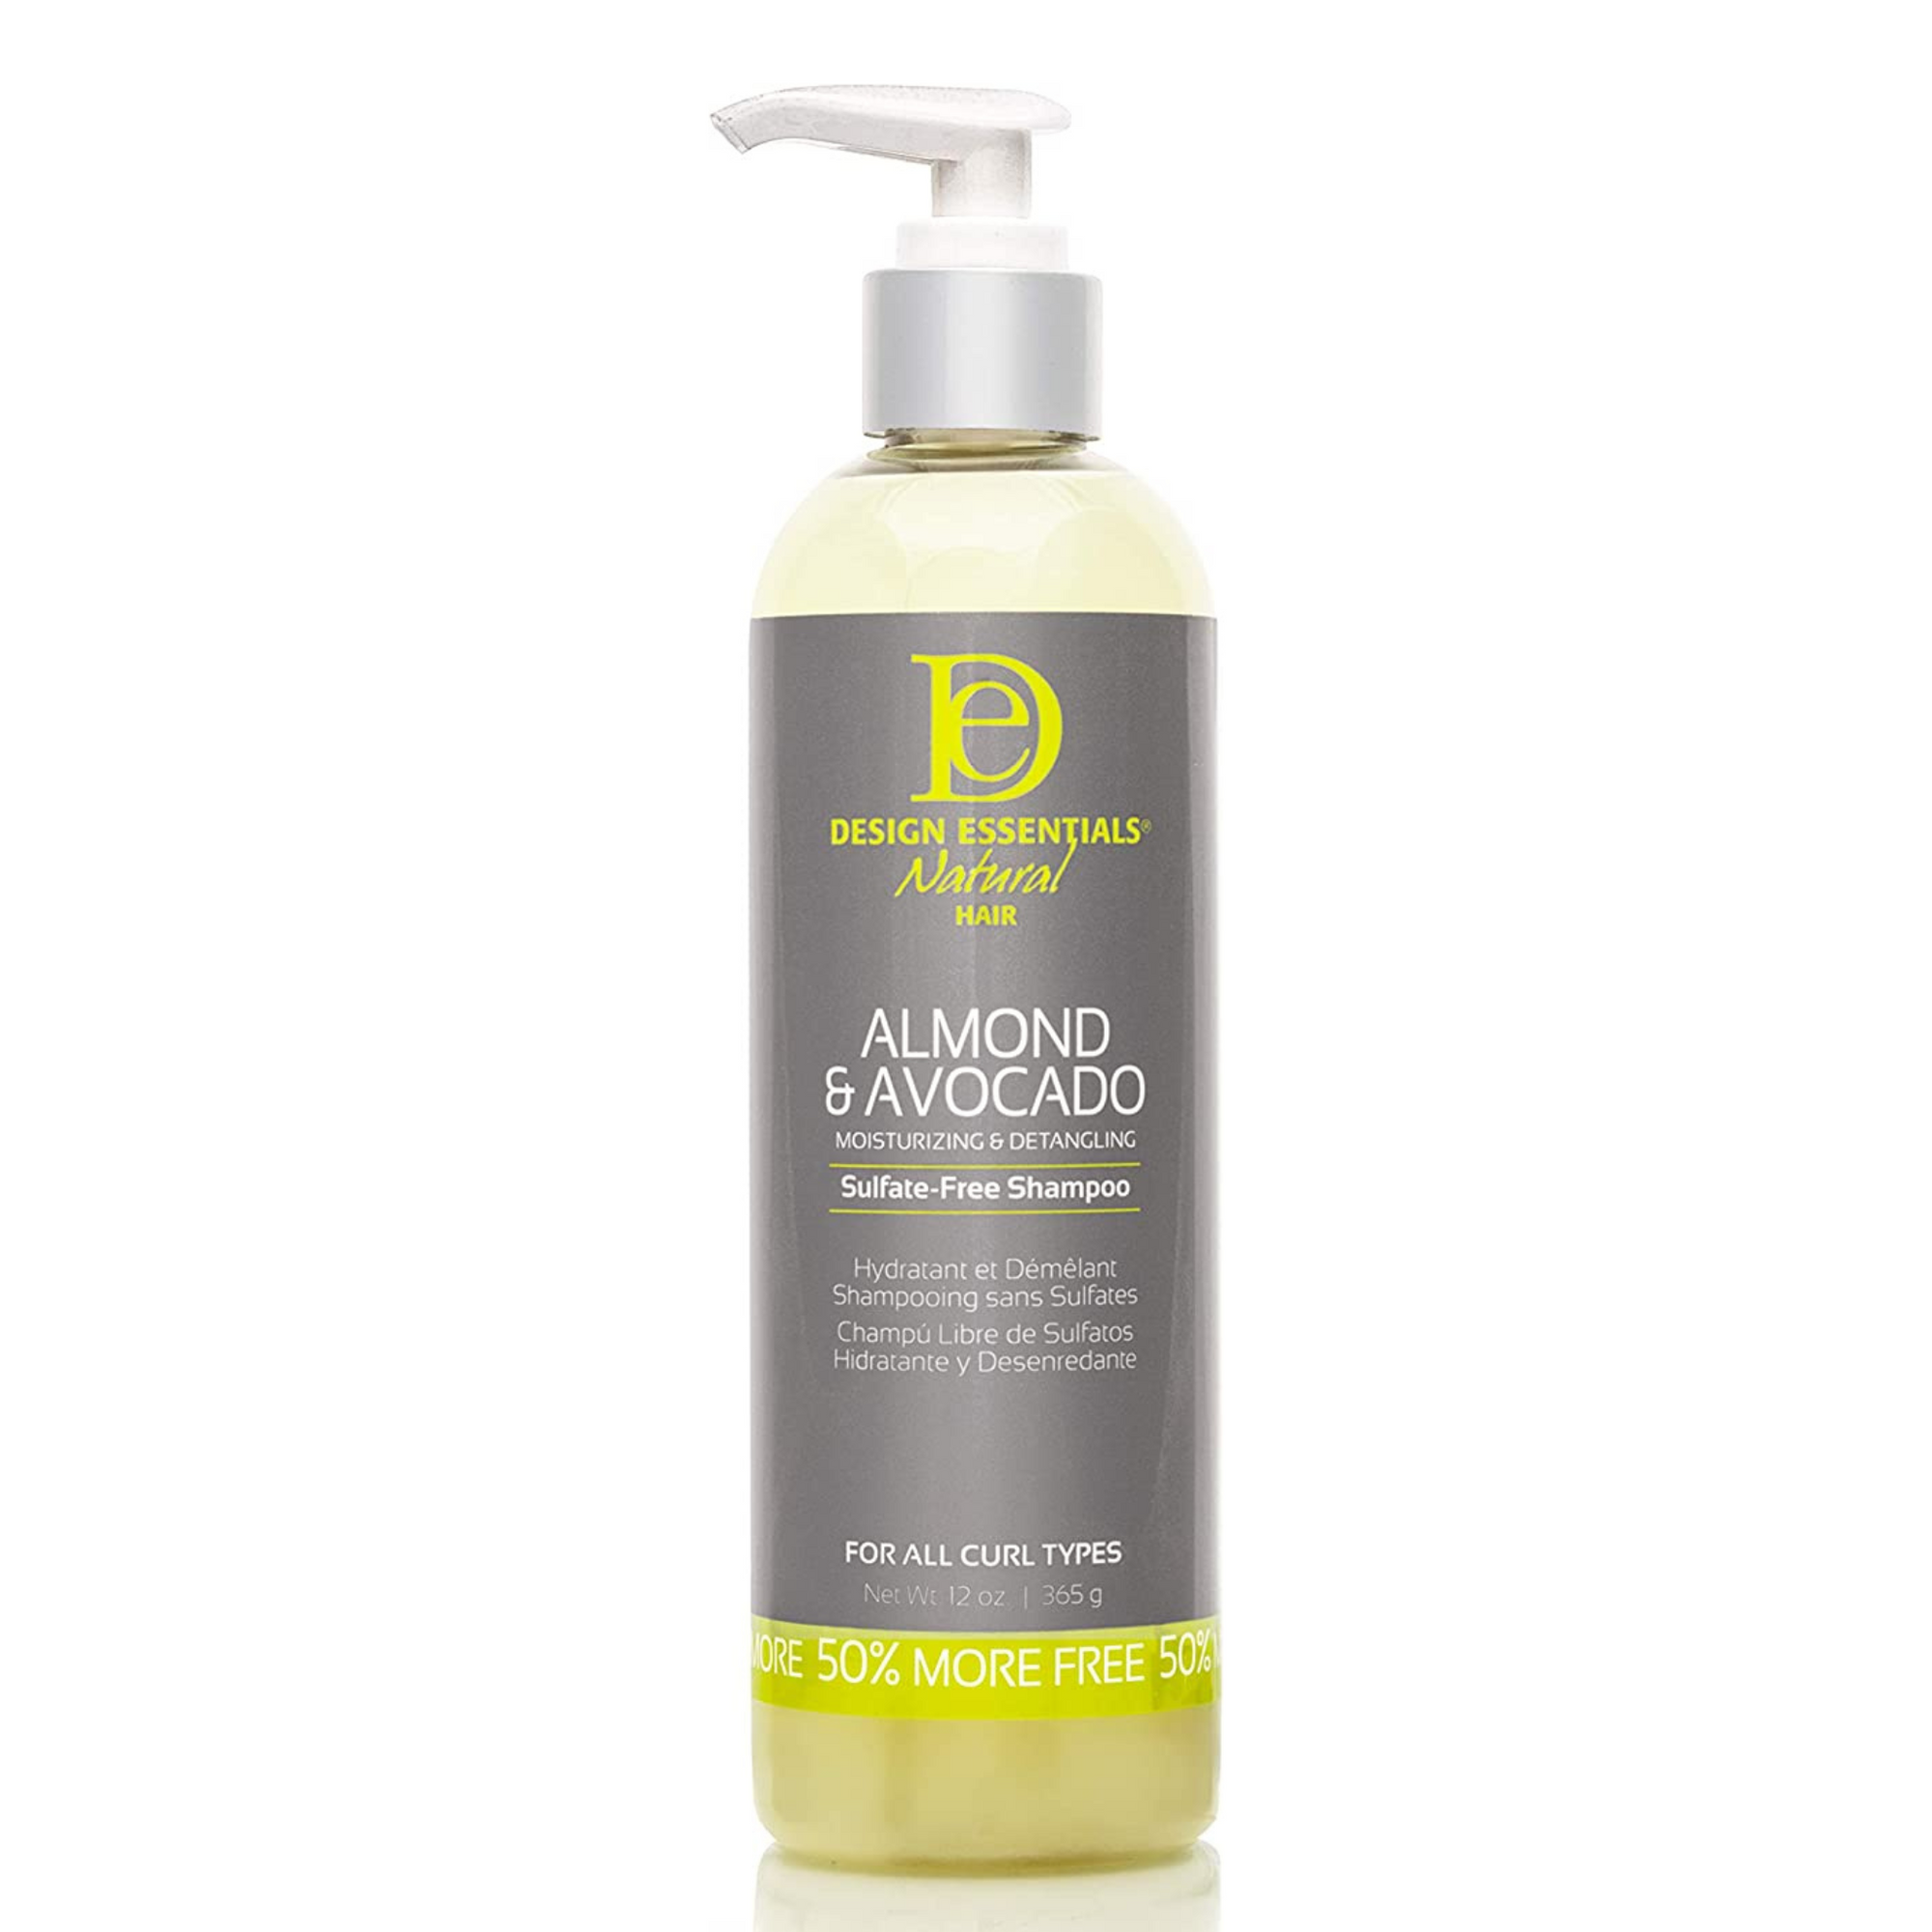 Design Essentials Almond & Avocado Moisturizing & Detangling Sulfate-Free Shampoo